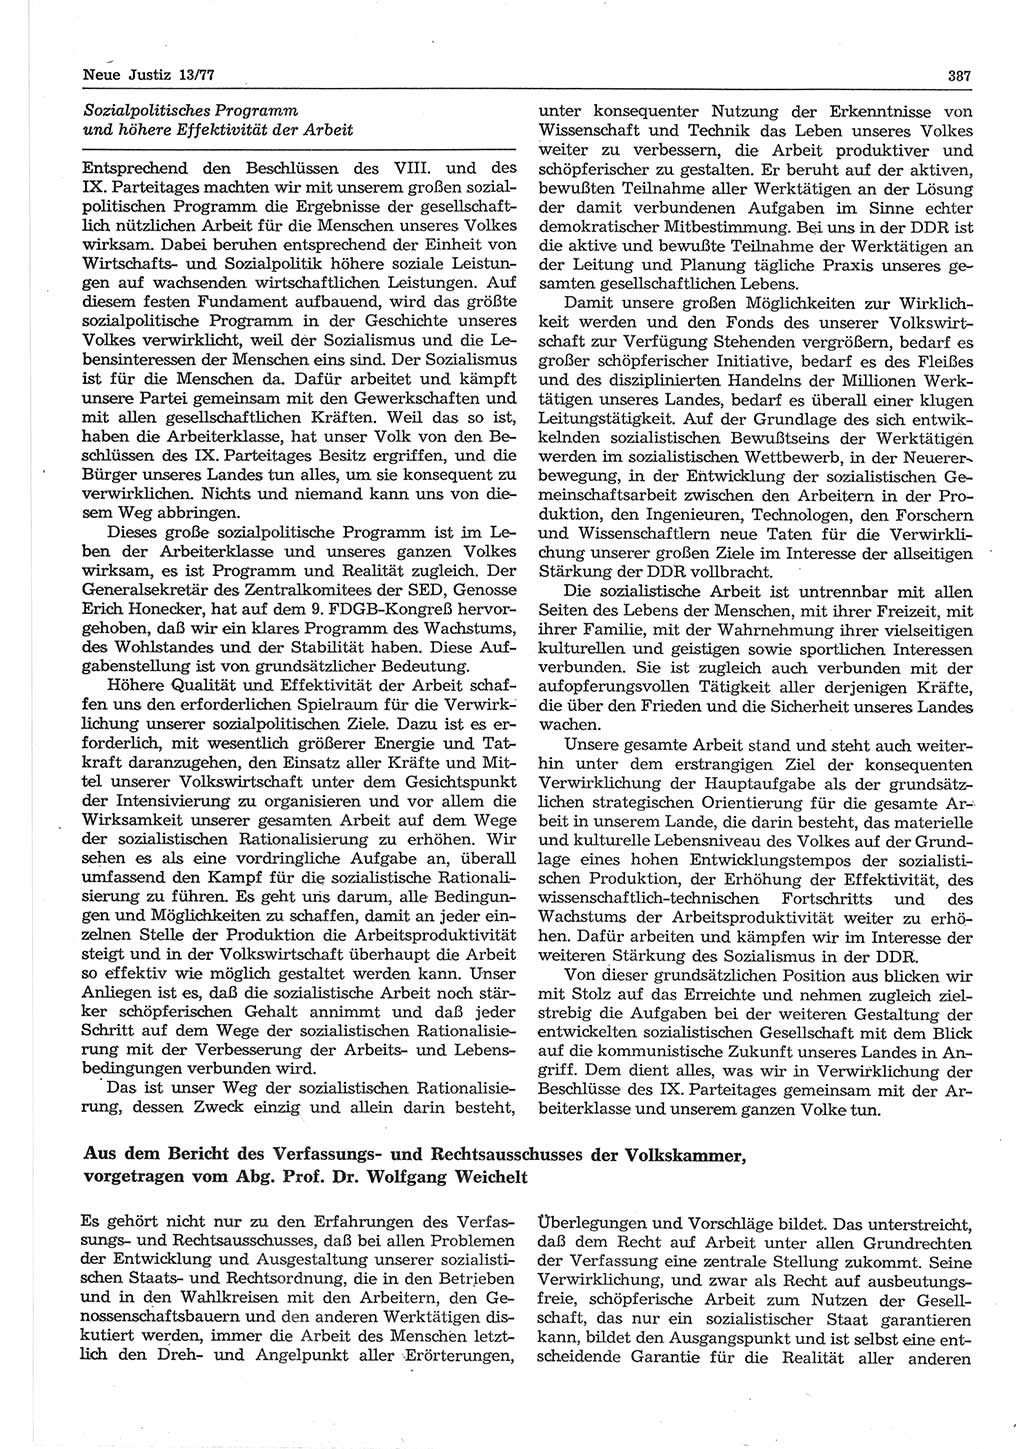 Neue Justiz (NJ), Zeitschrift für Recht und Rechtswissenschaft-Zeitschrift, sozialistisches Recht und Gesetzlichkeit, 31. Jahrgang 1977, Seite 387 (NJ DDR 1977, S. 387)